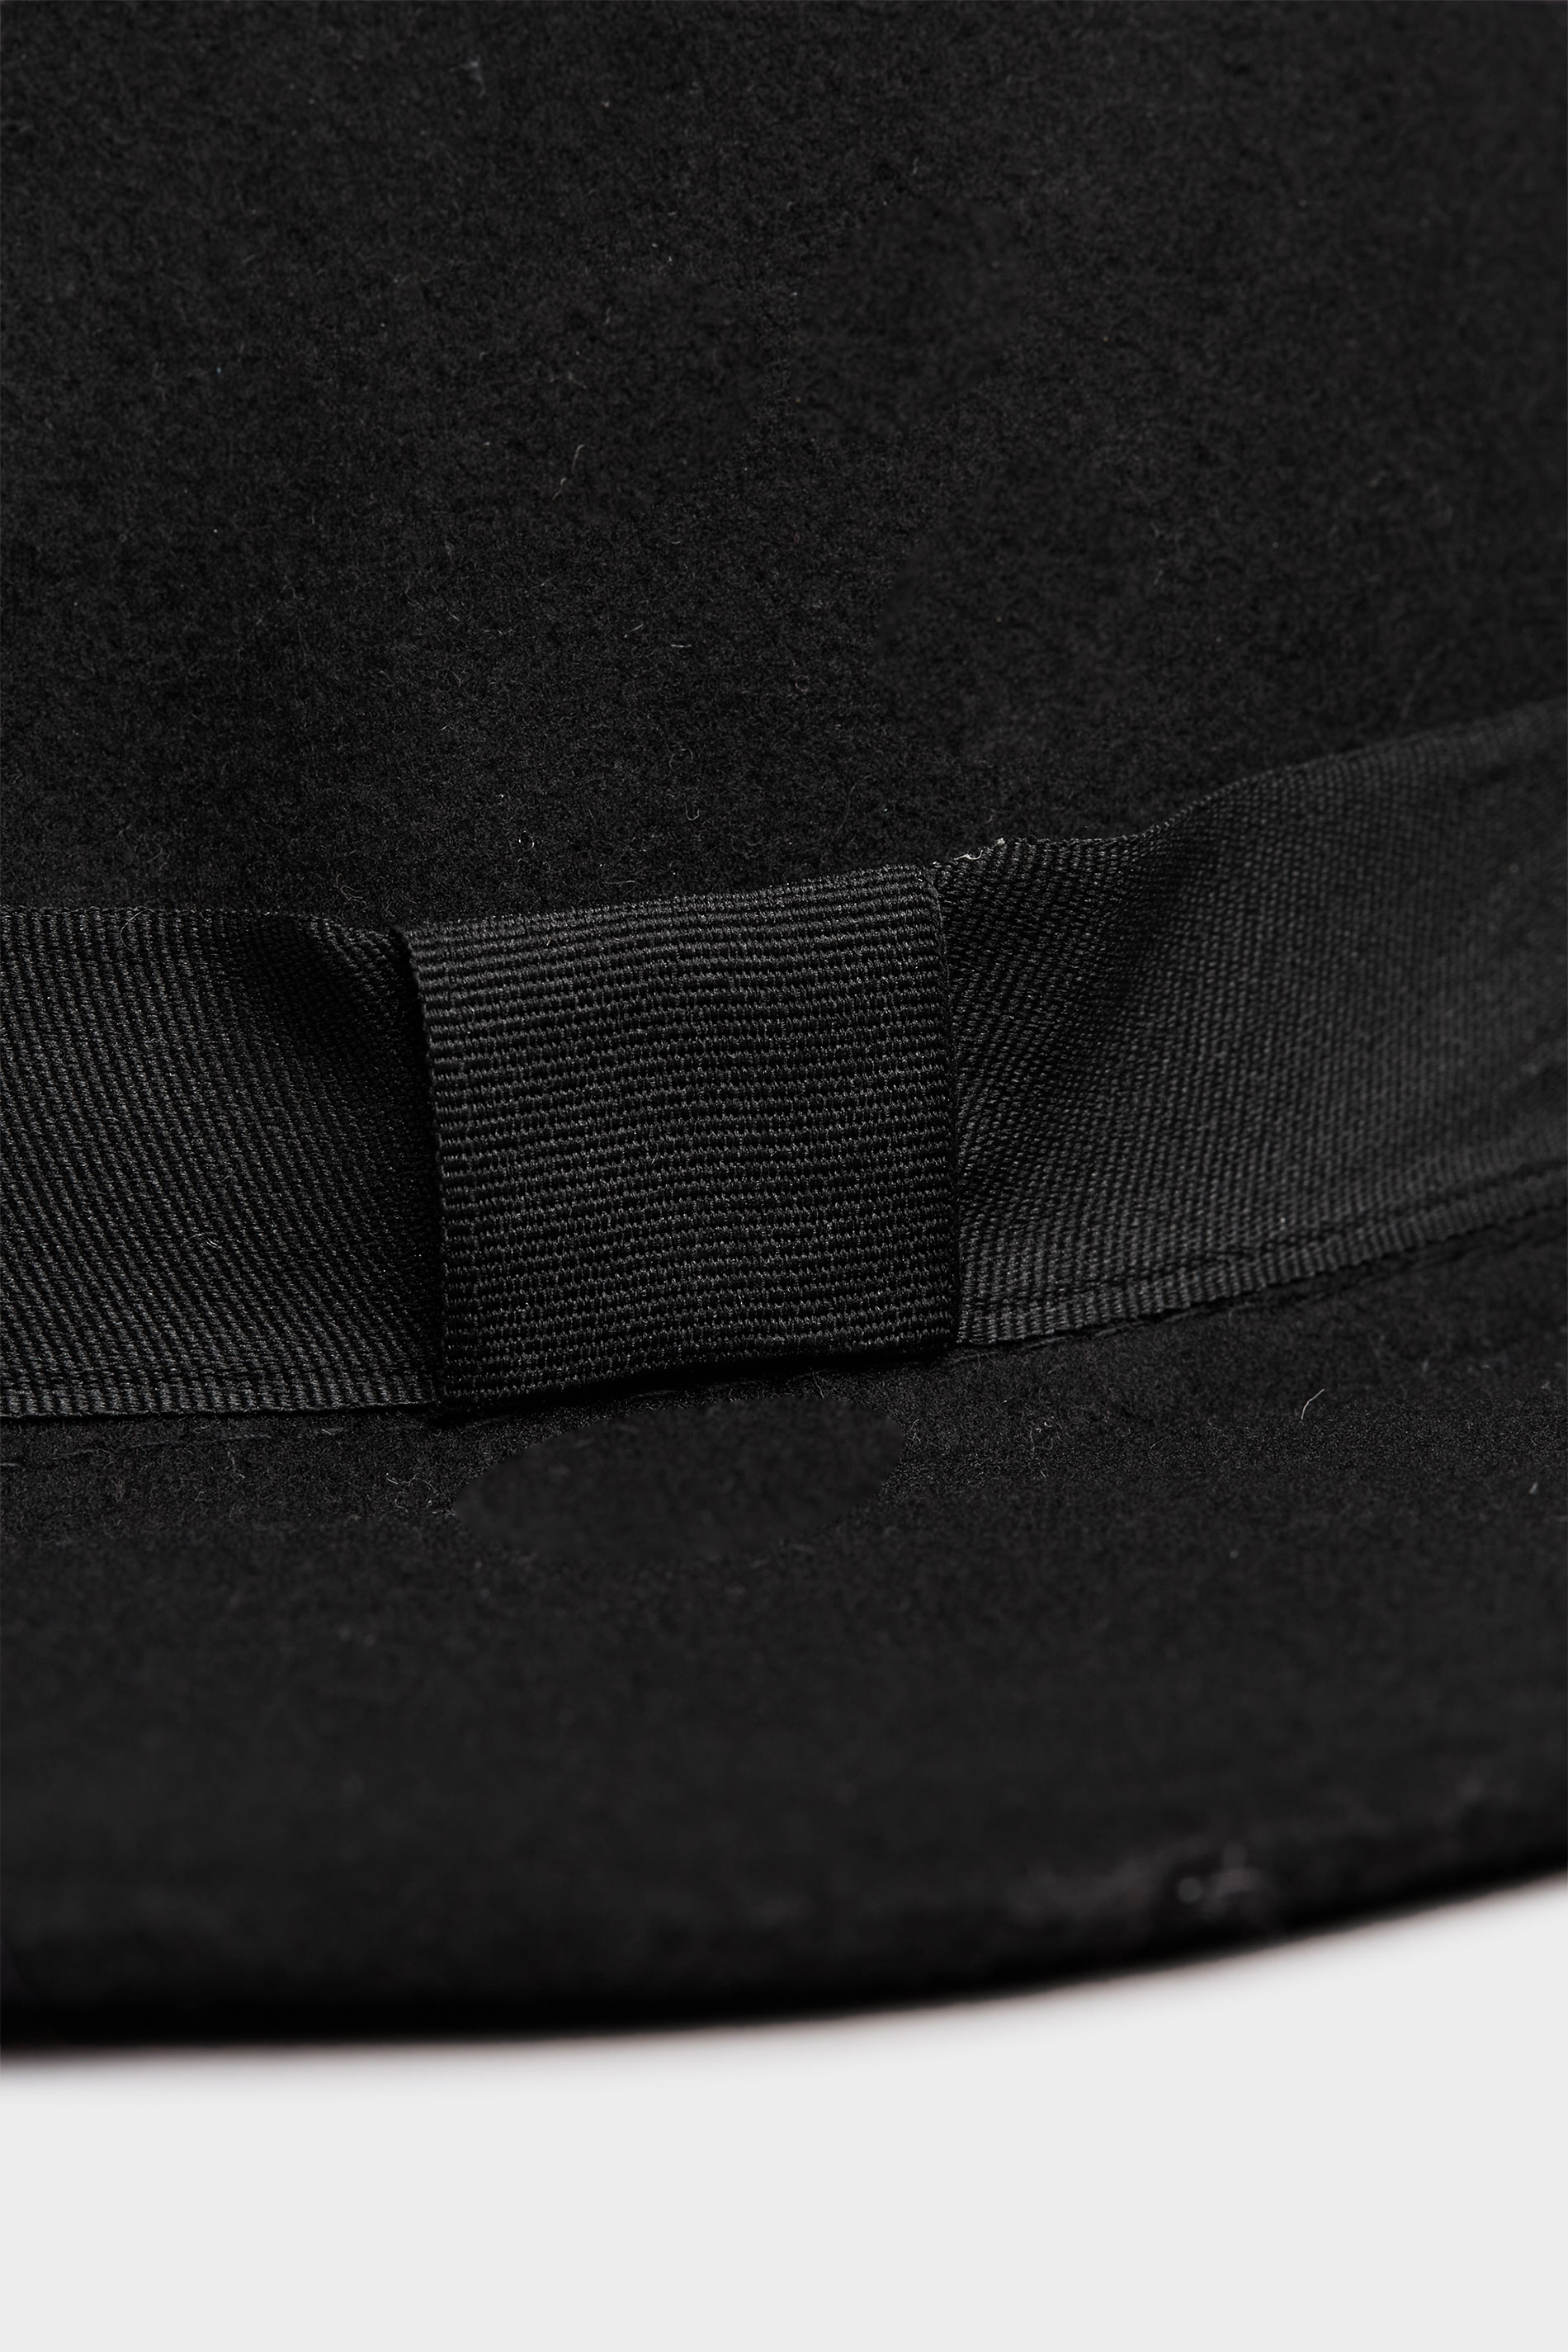 Black Fedora Hat | Yours Clothing 3